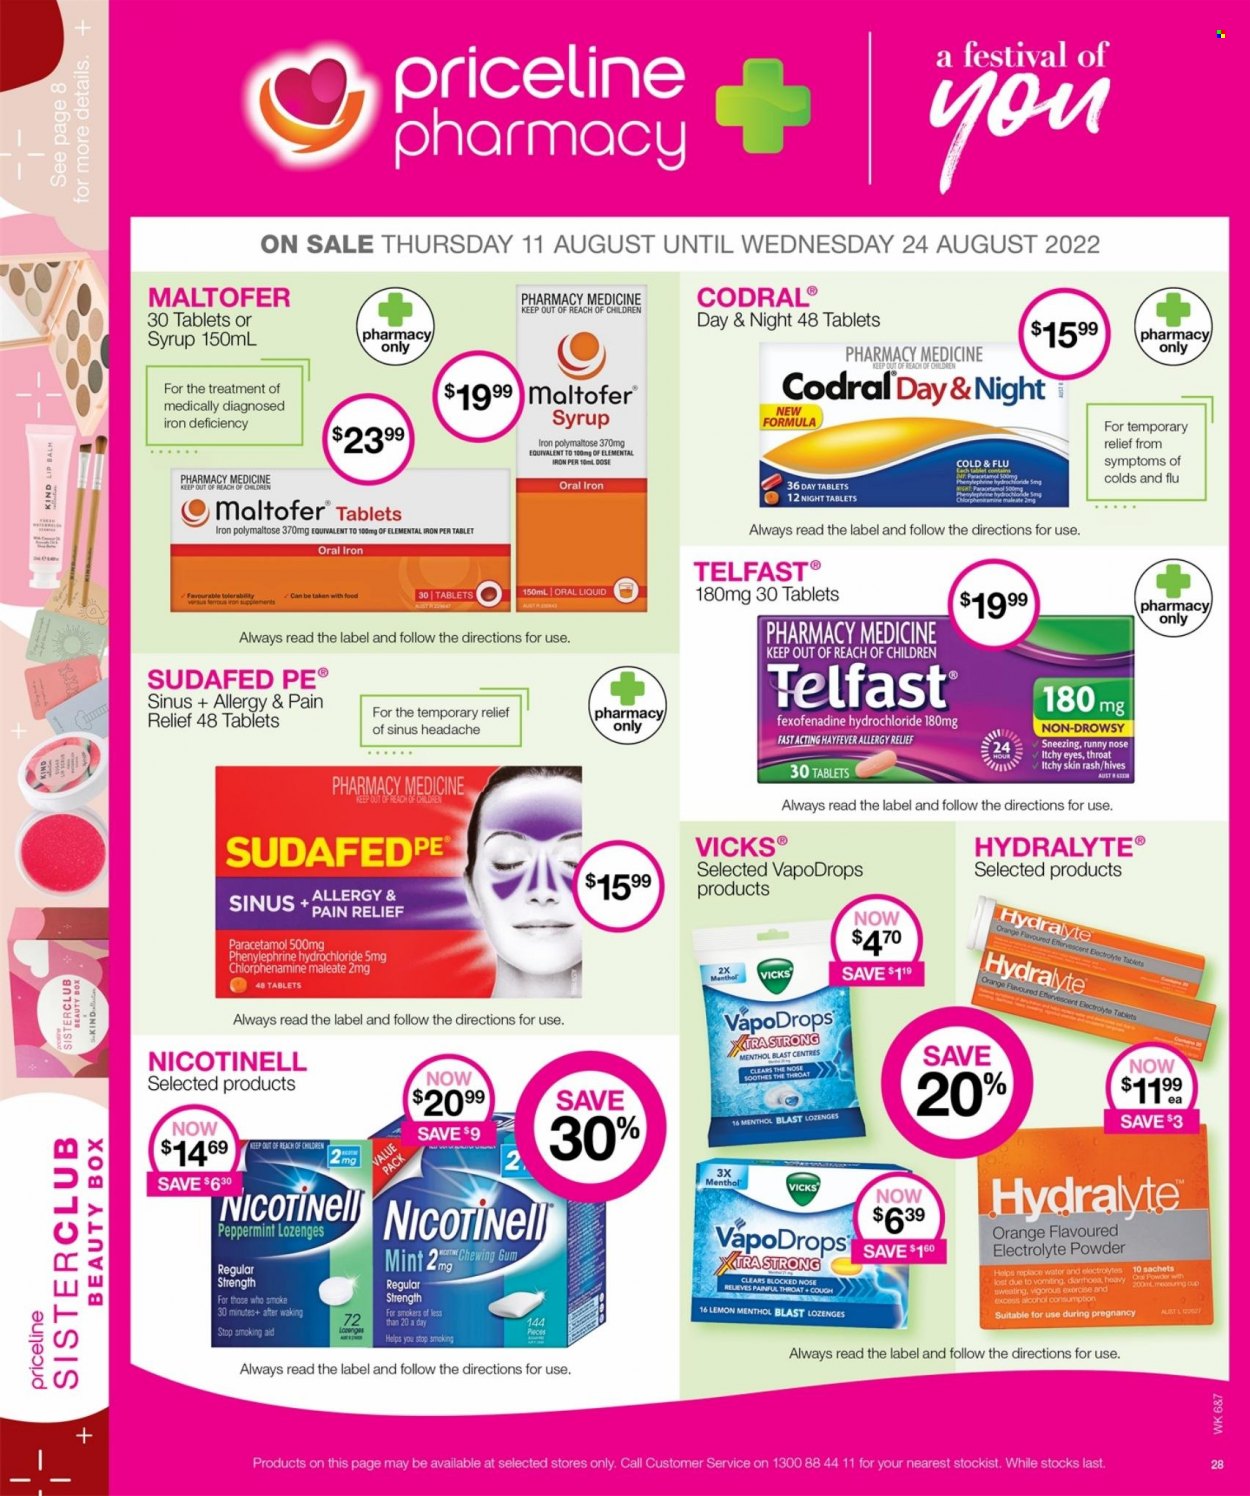 Priceline Pharmacy catalogue - 11.8.2022 - 24.8.2022.